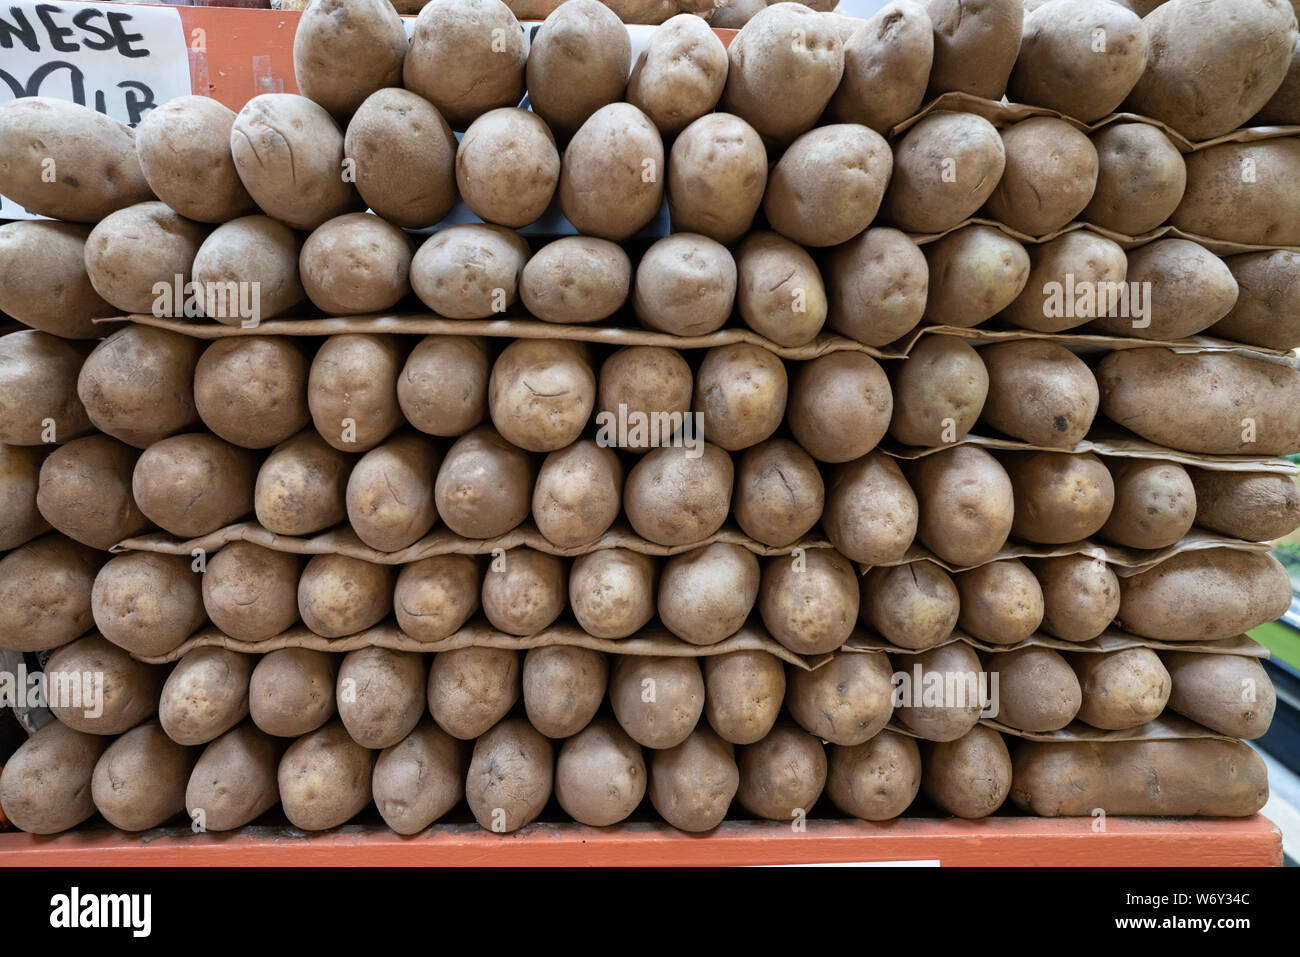 Les pommes de terre roussâtres empilés dans la section des fruits et légumes en supermarché propre Banque D'Images